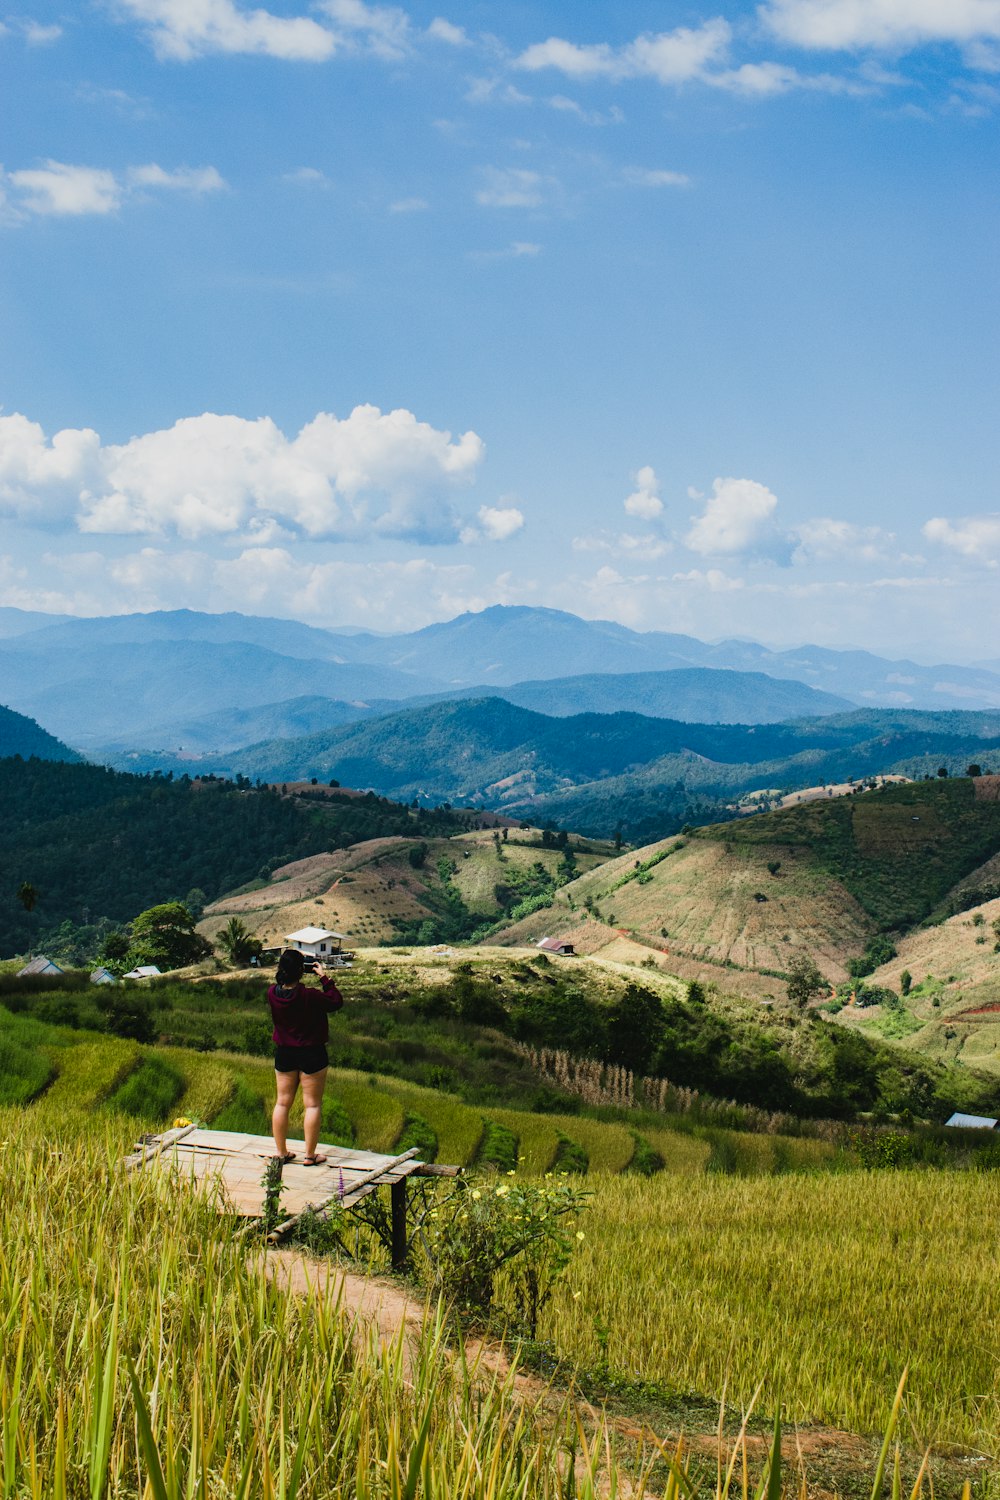 une personne debout sur une corniche surplombant une vallée avec des montagnes en arrière-plan